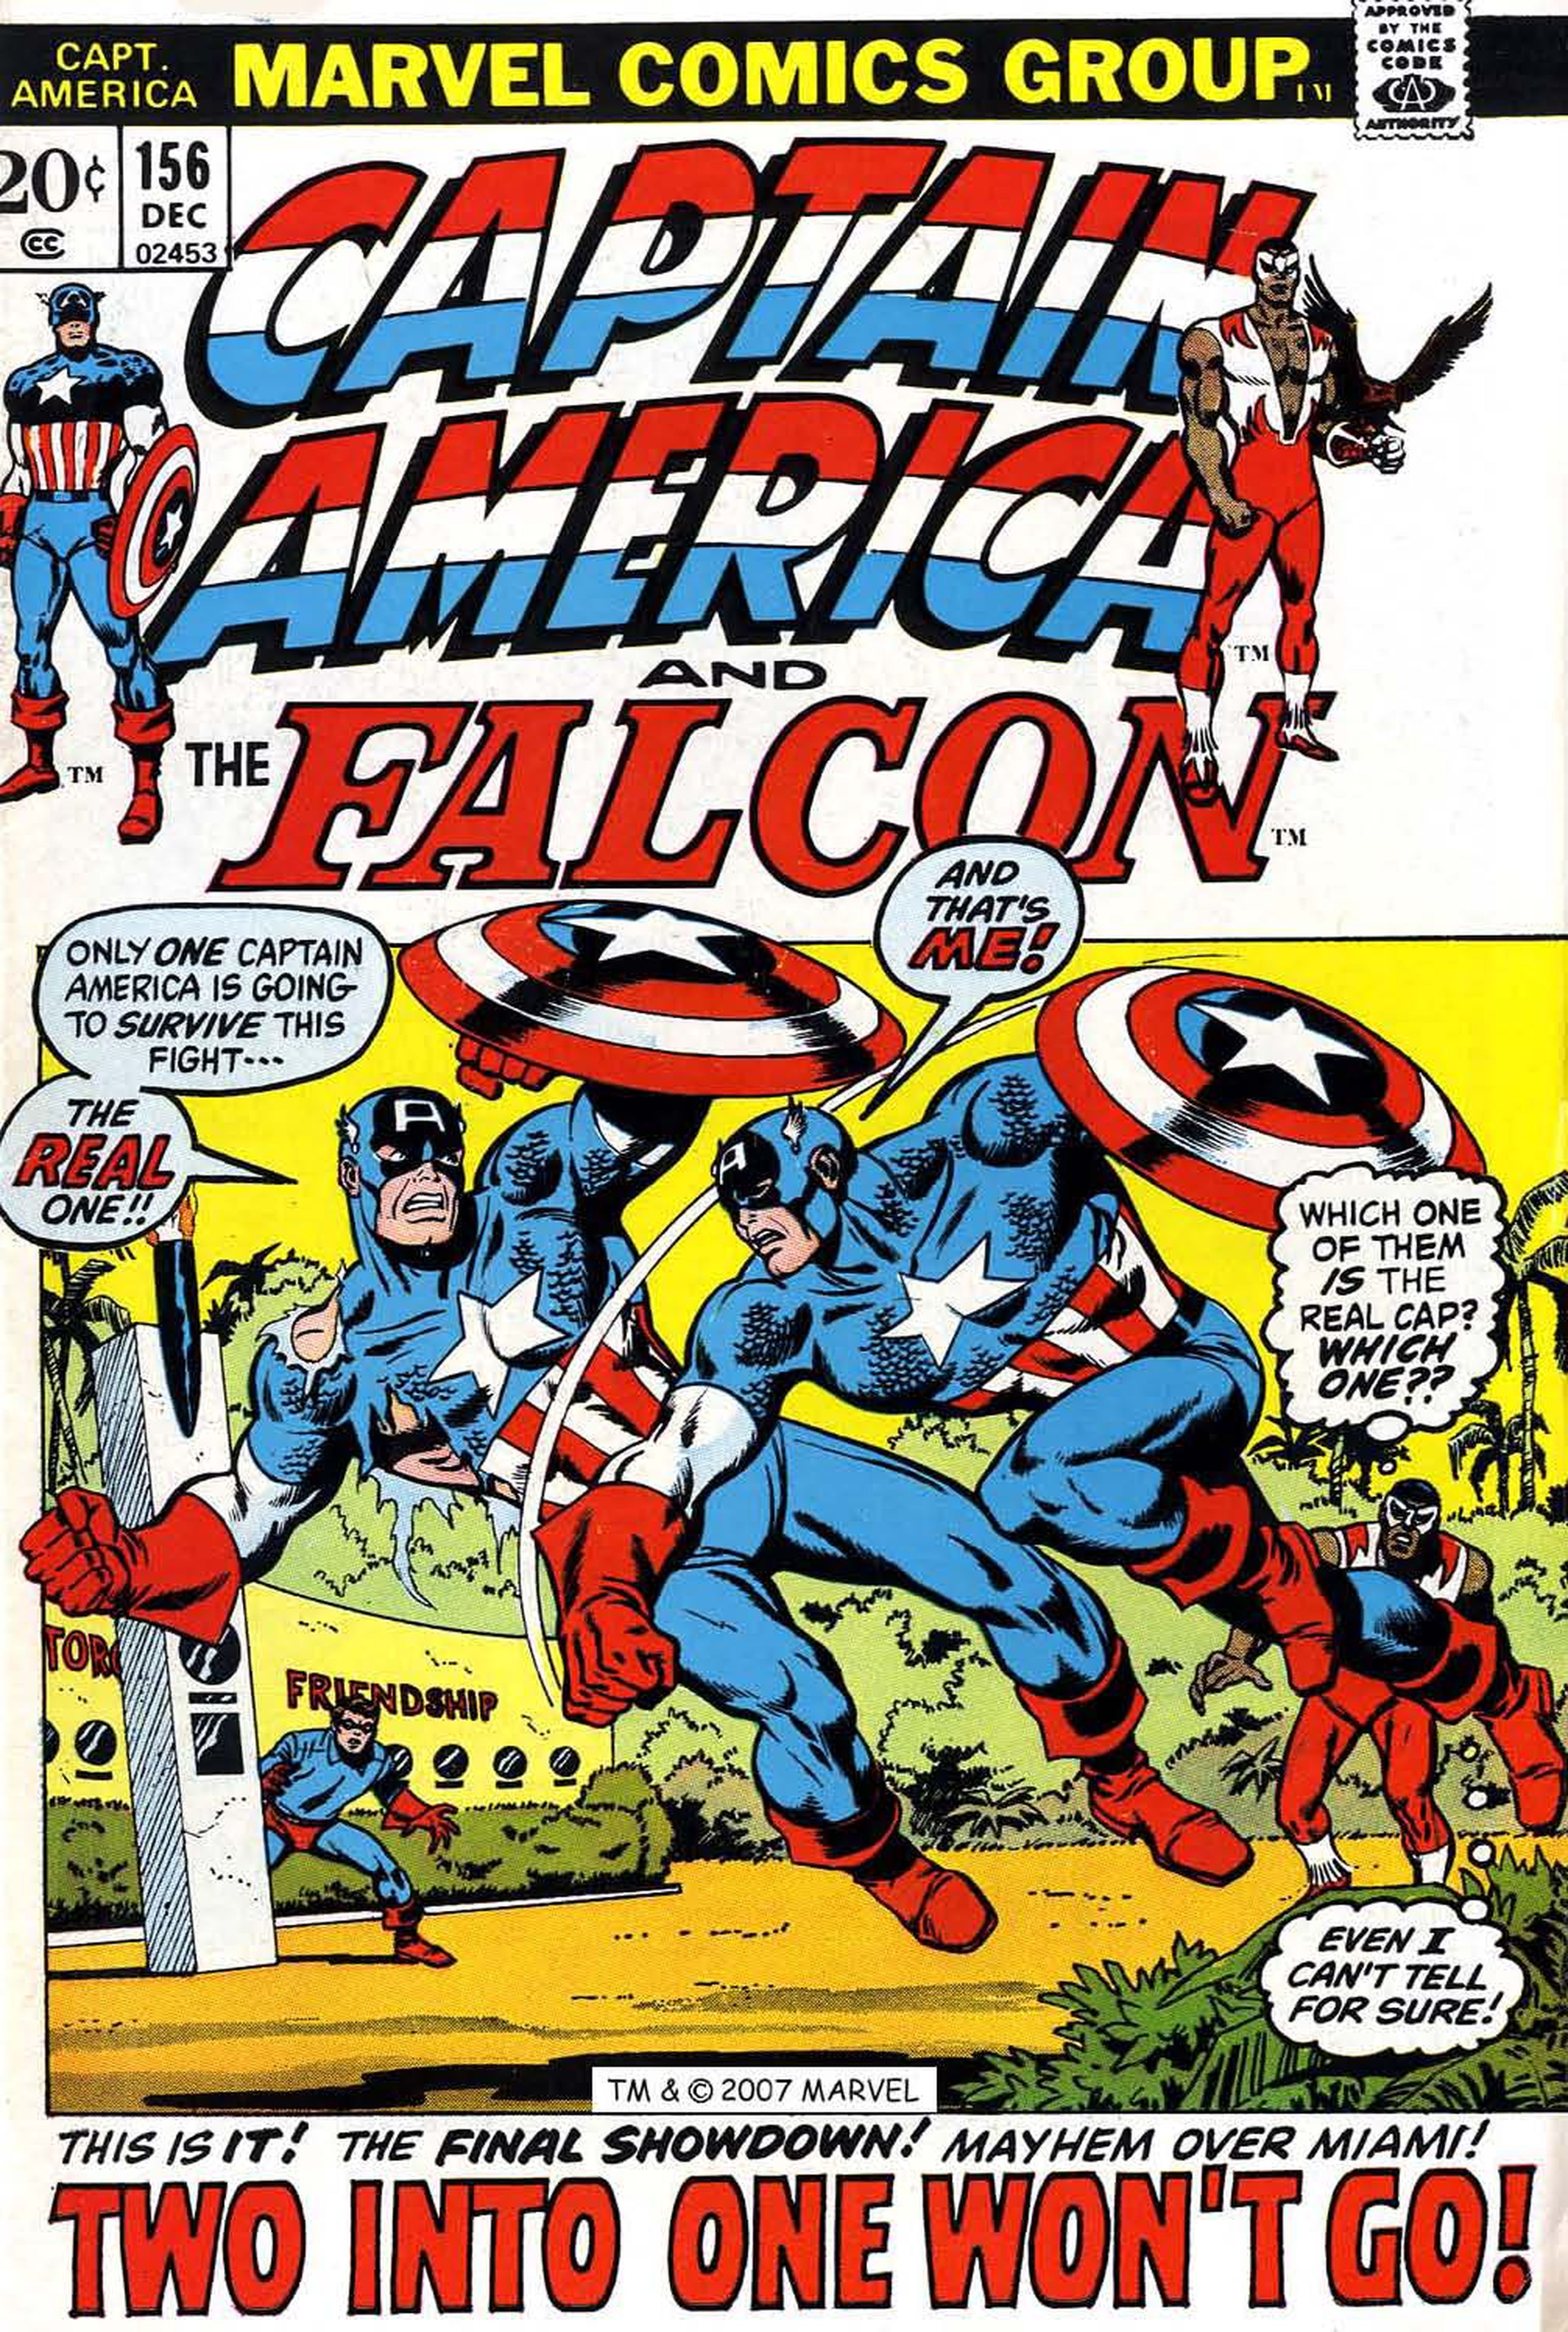 ¿Será el Capitán América el villano de Capitán América 3?